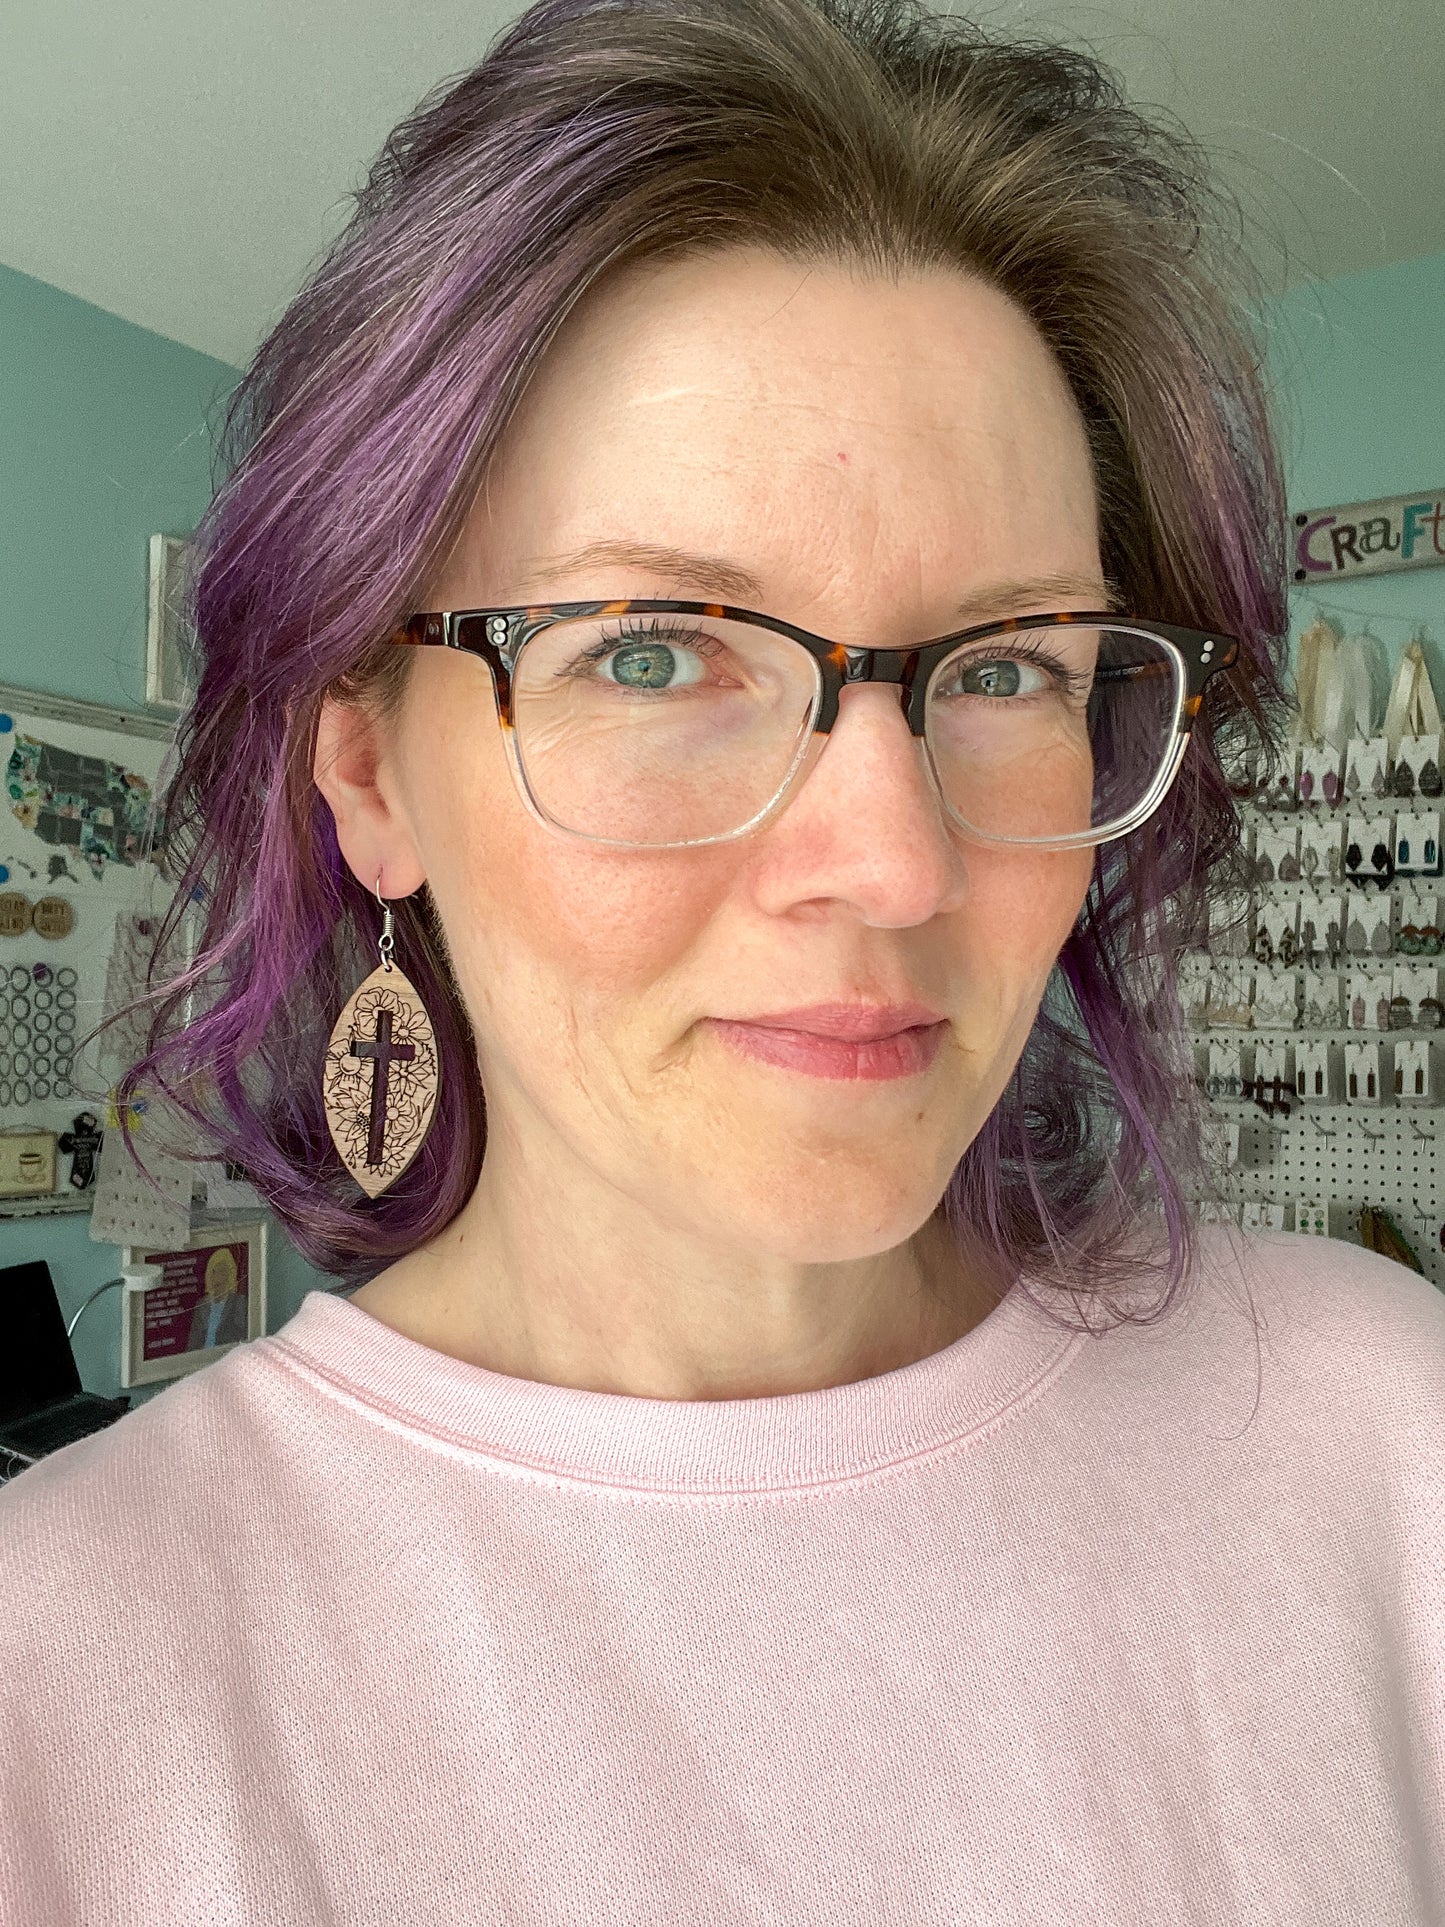 Walnut Wood Floral Cross Earrings: Choose From 3 Designs